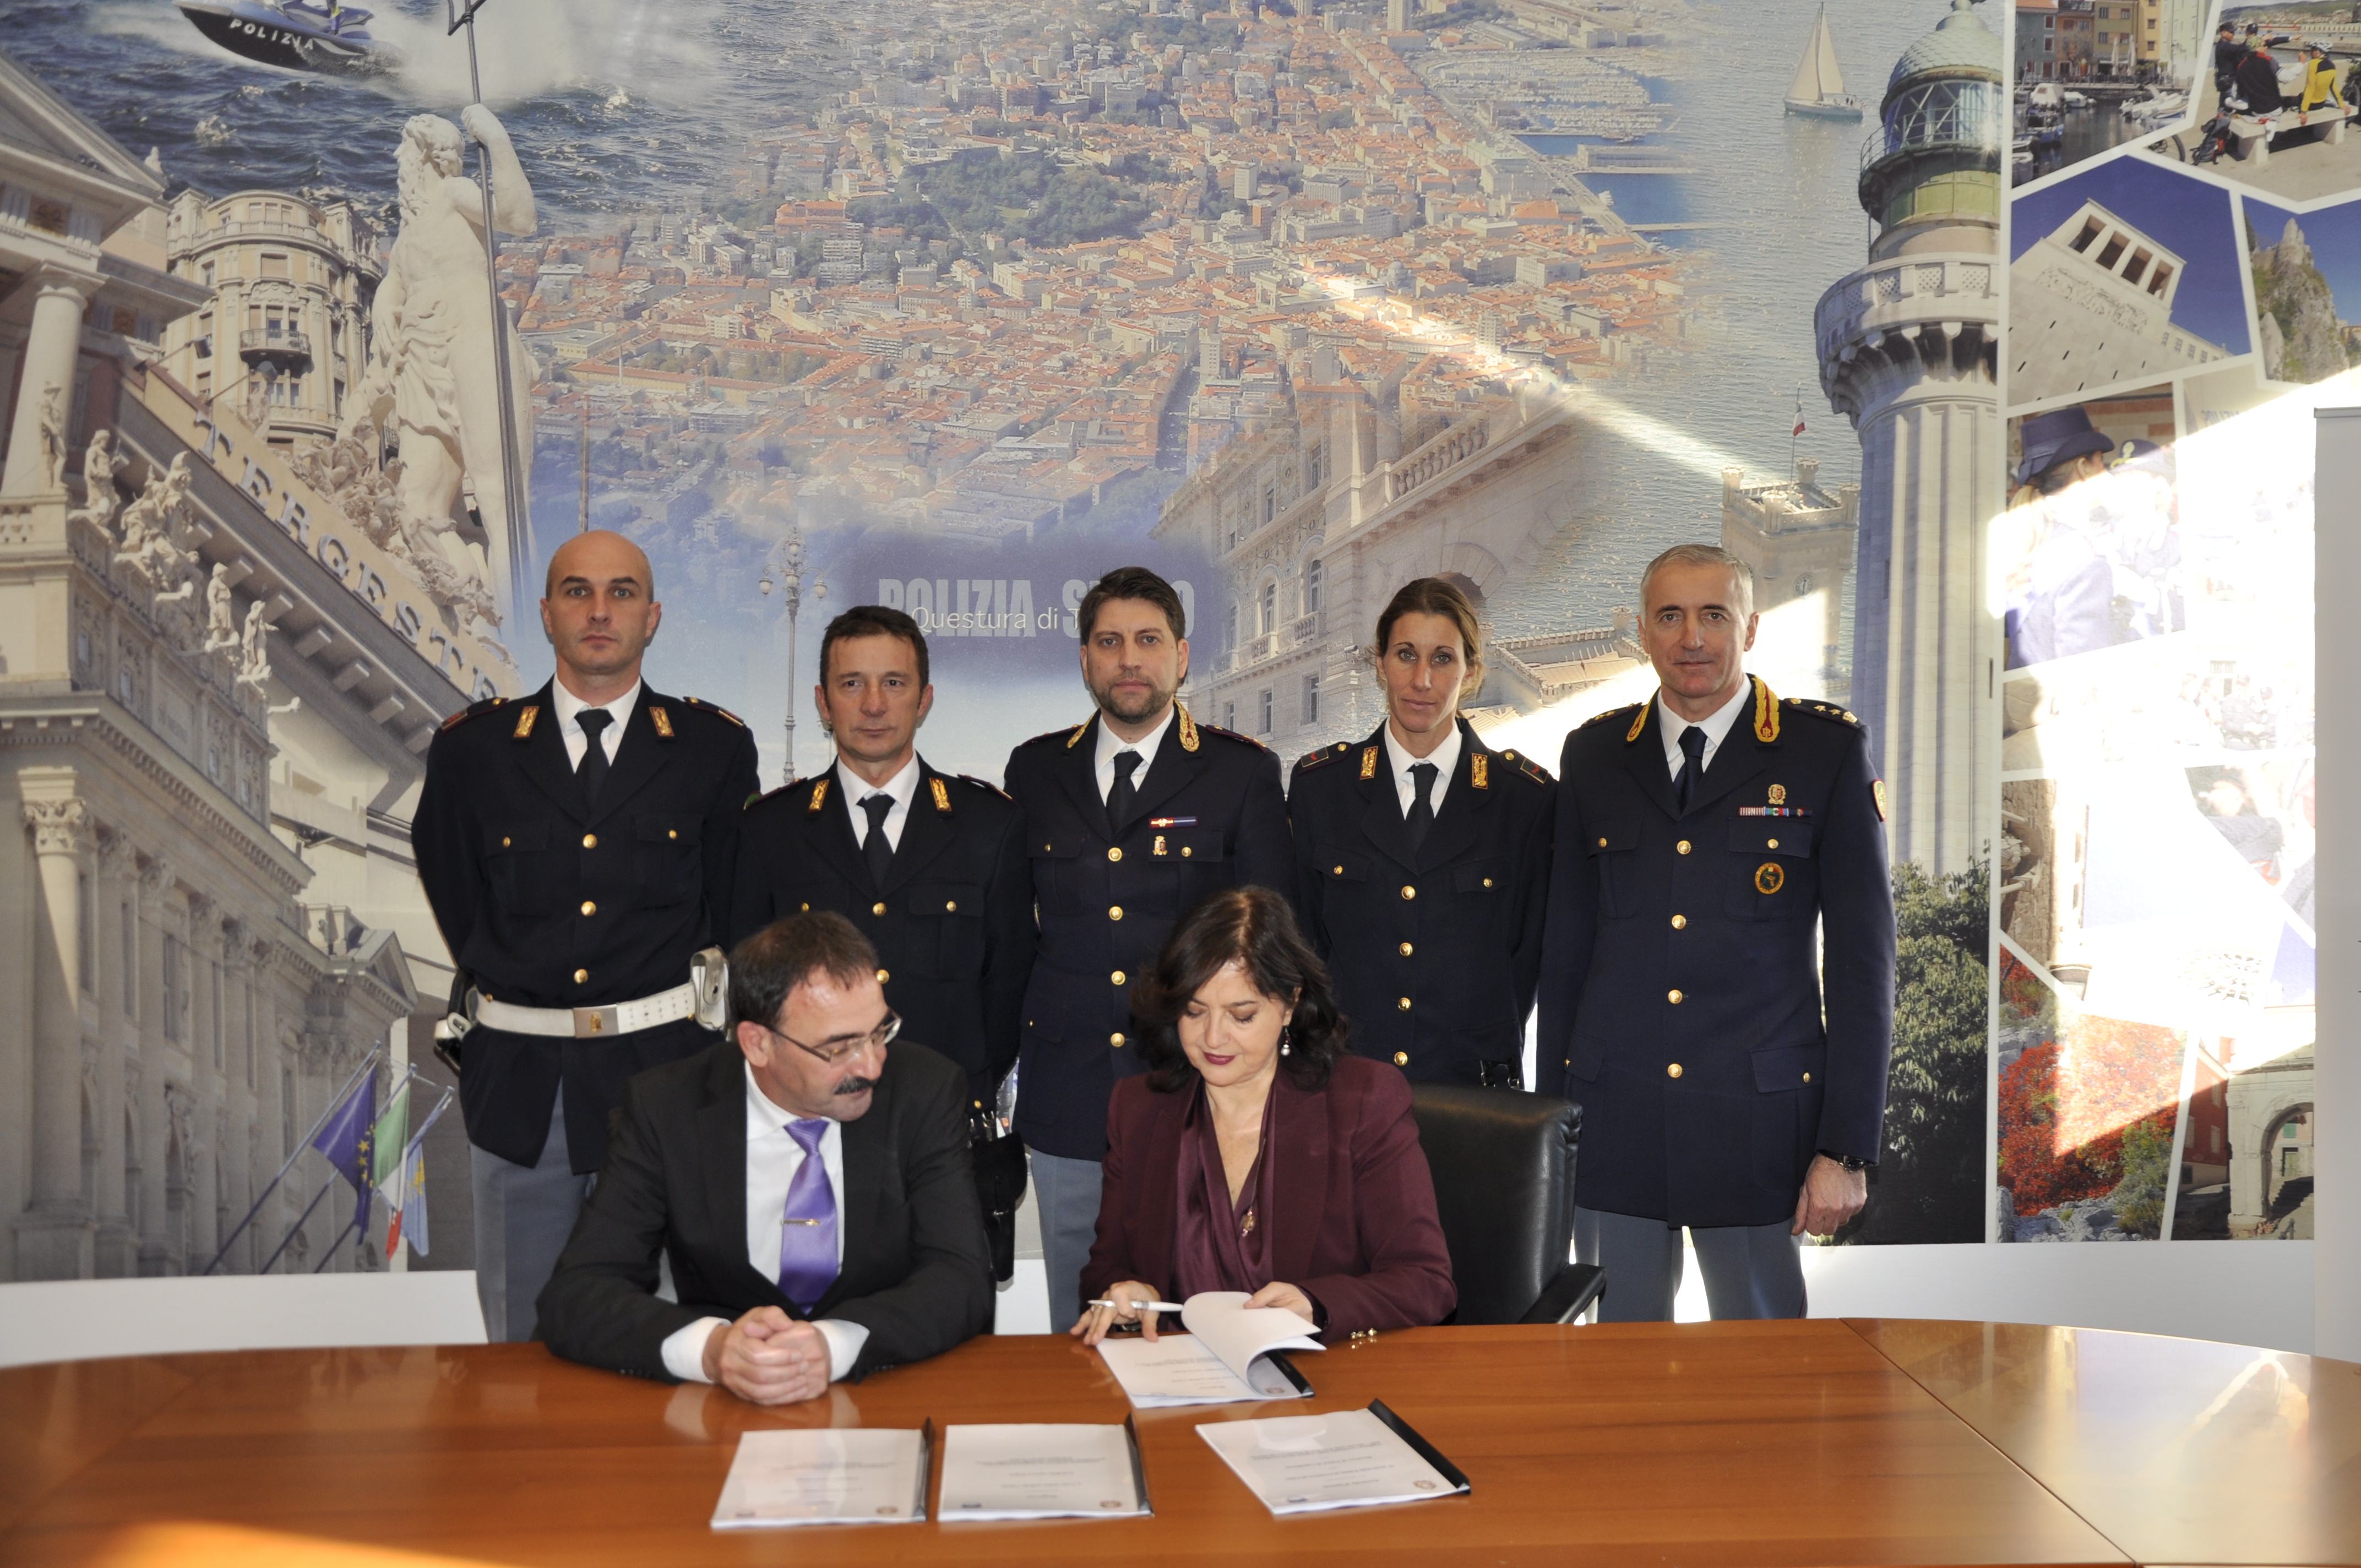 Accordo Trieste - Capodistria